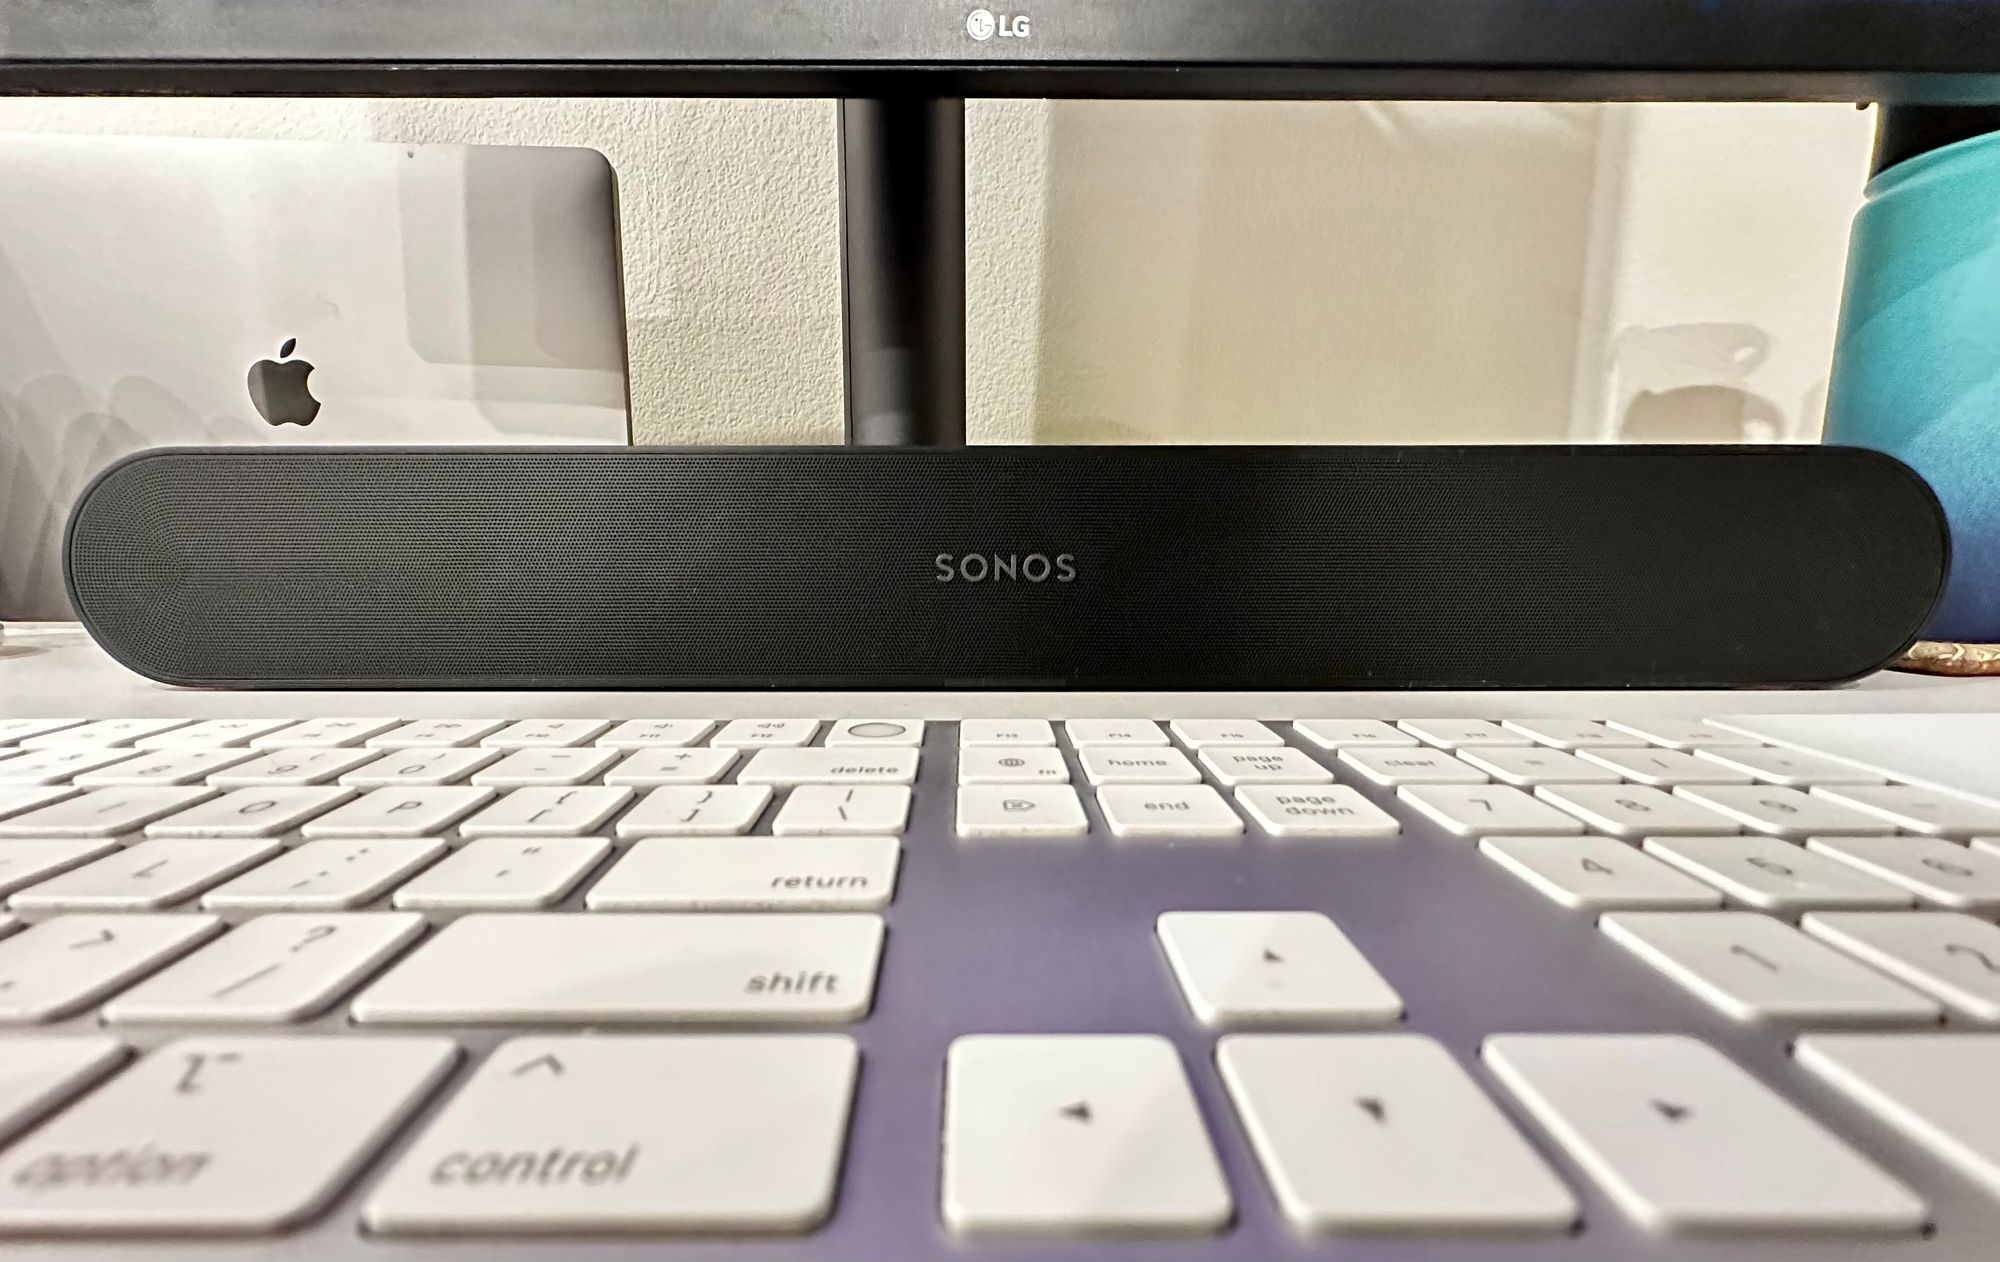 Sonos as Dedicated MacBook Pro Speaker